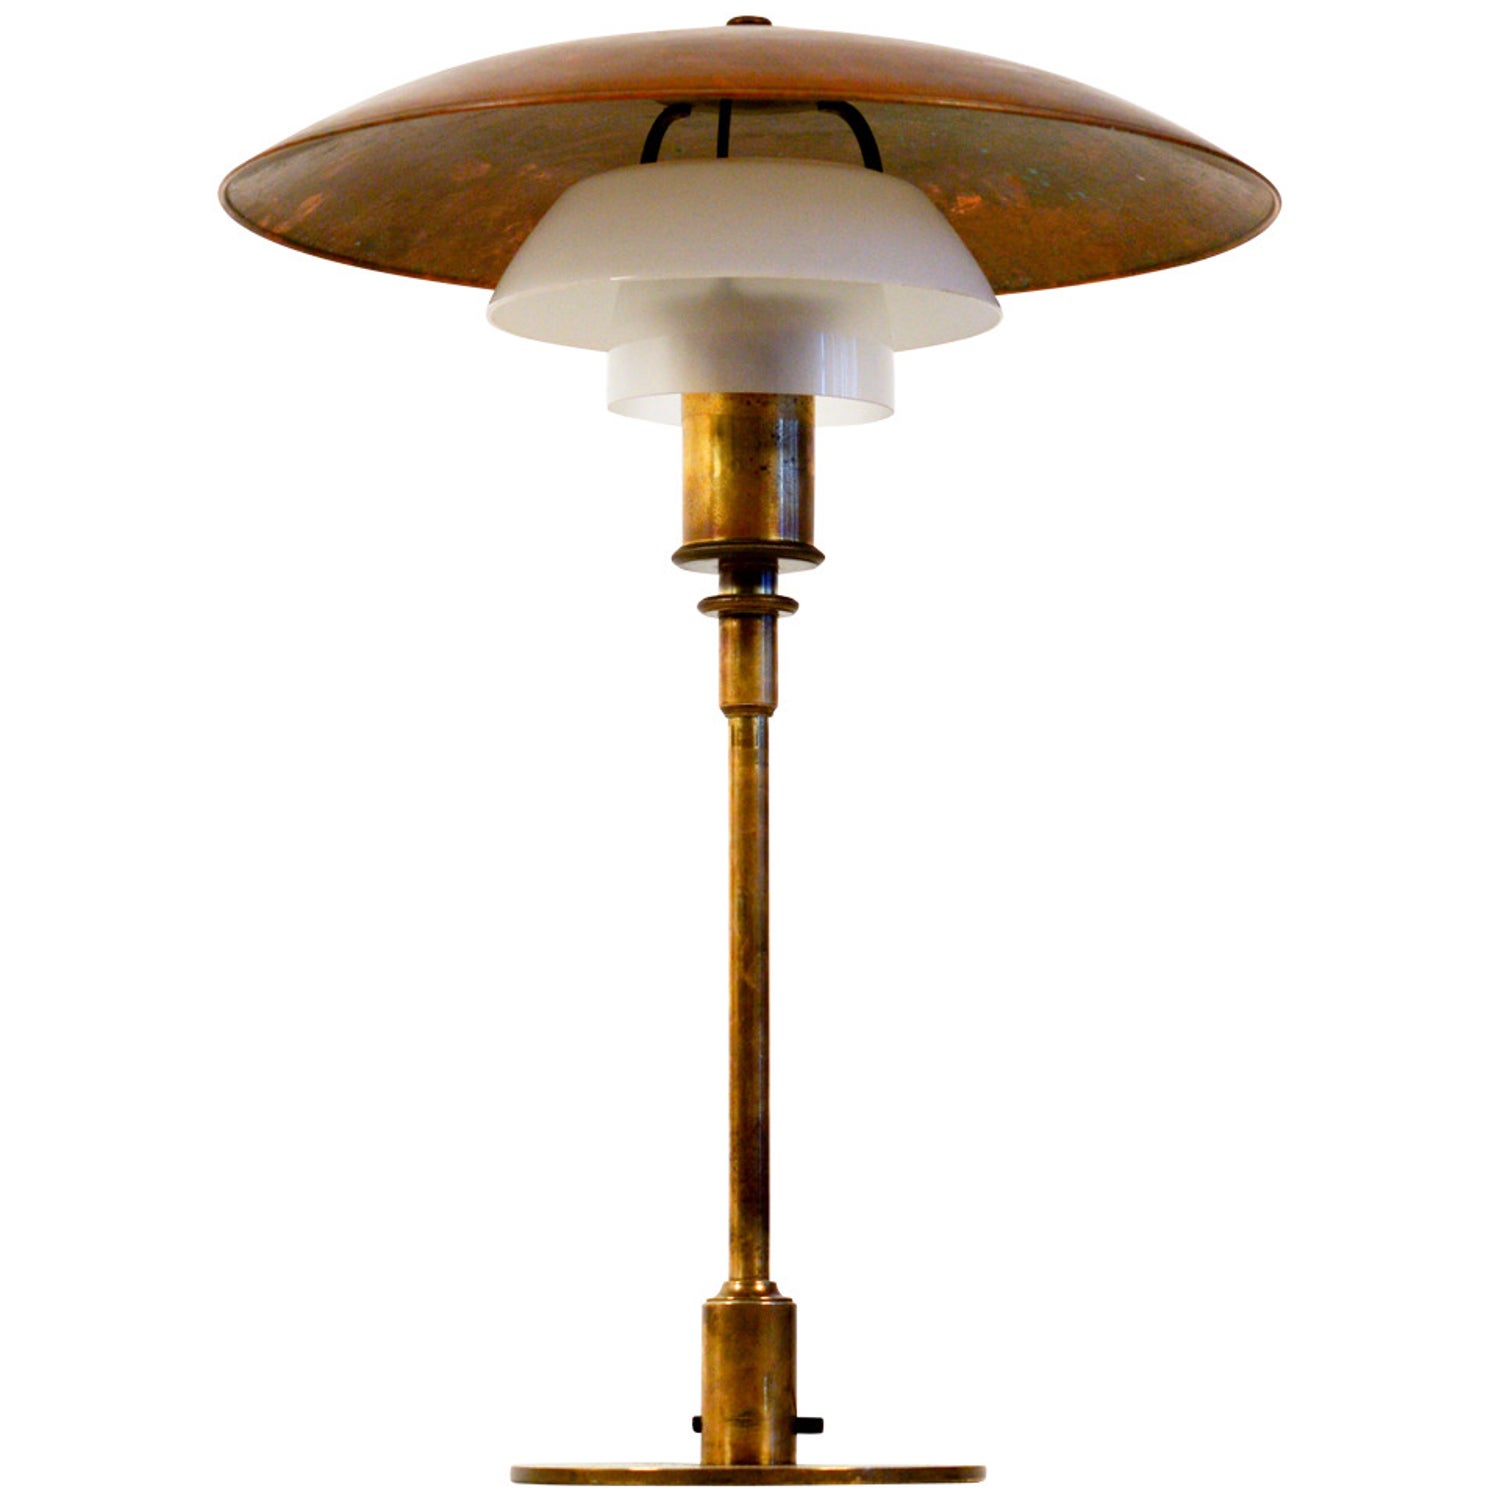 PH Charlottenborg Ceiling Lamp, Louis Poulsen, Denmark at 1stDibs